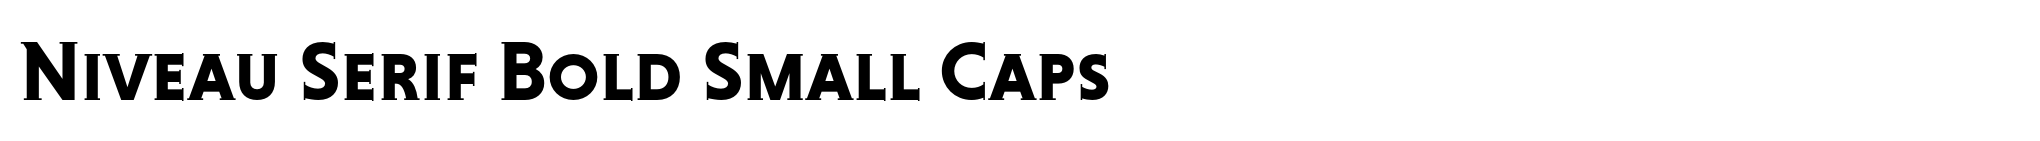 Niveau Serif Bold Small Caps image